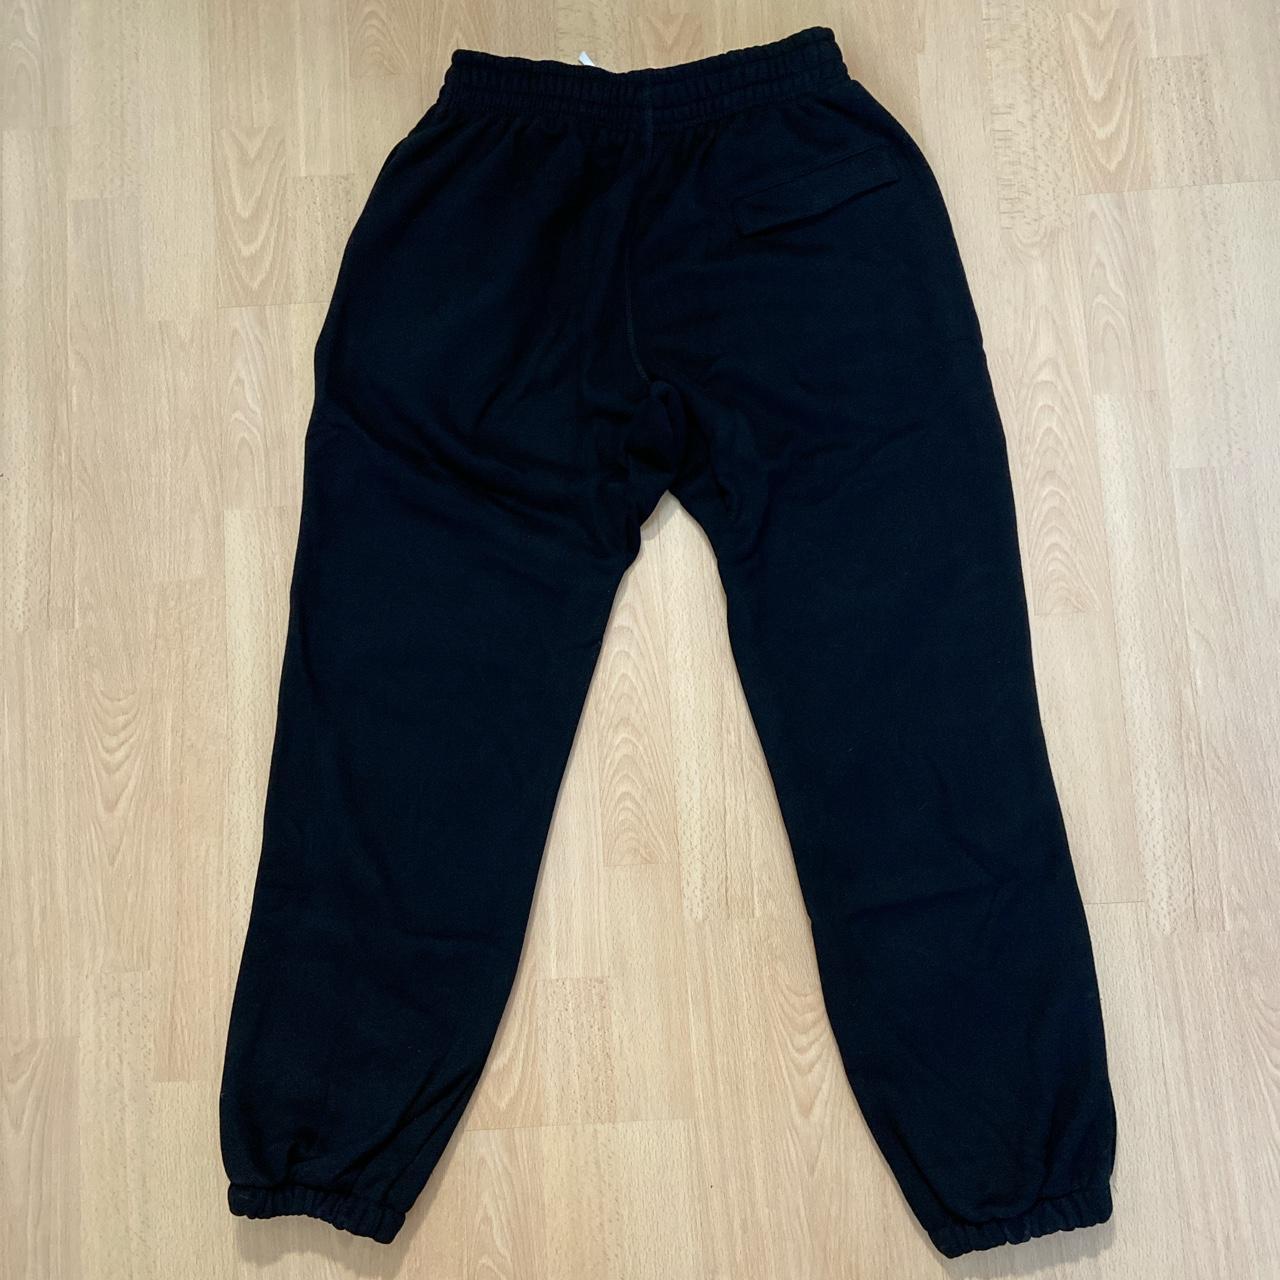 Crtz - track pants black Condition: 10/10 (never... - Depop